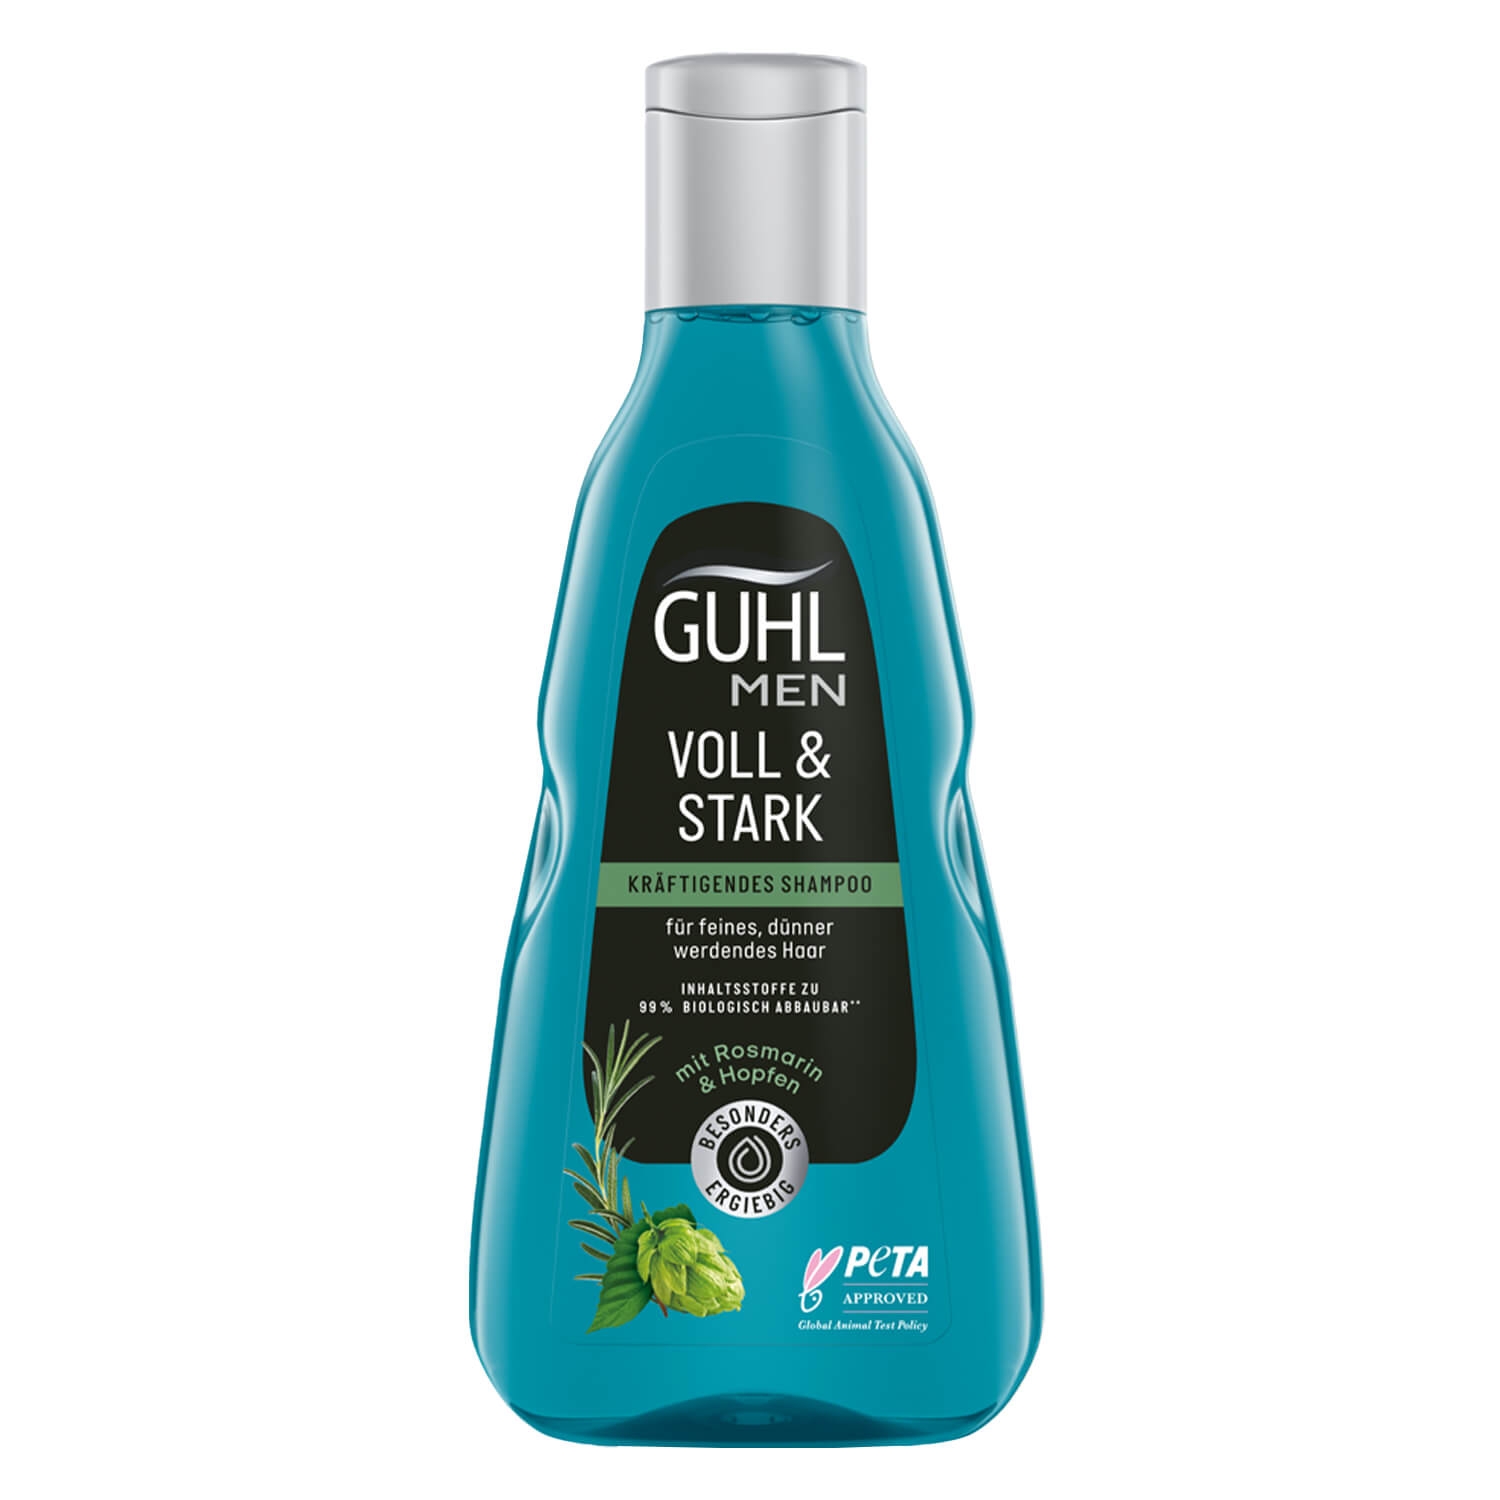 Product image from GUHL - MEN VOLL & STARK Kräftigendes Shampoo